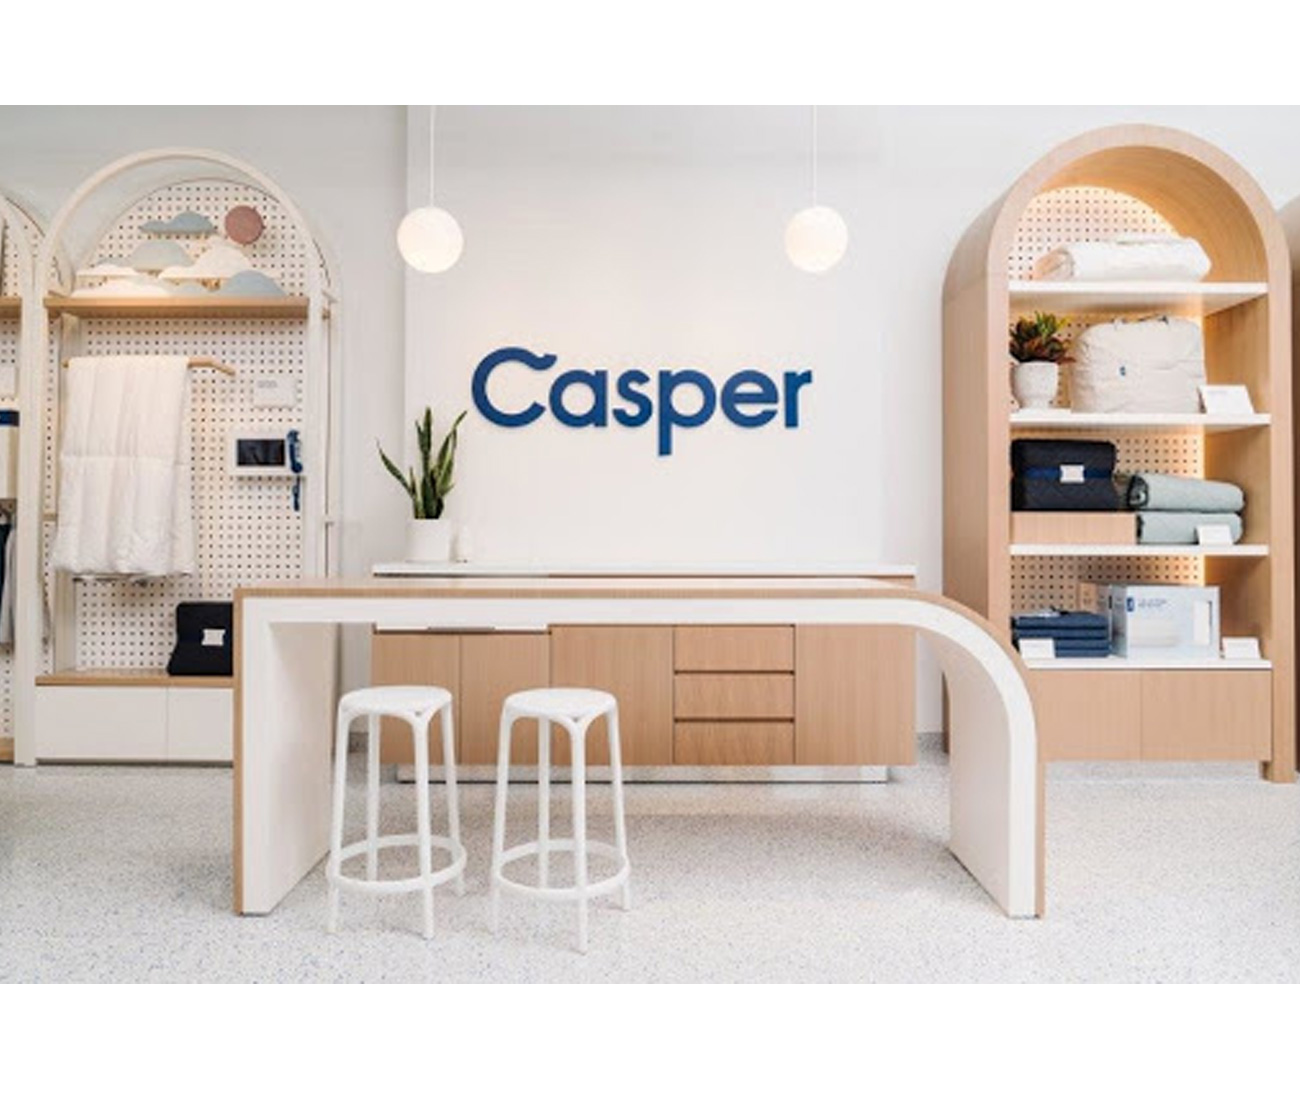 Casper mattress and furniture